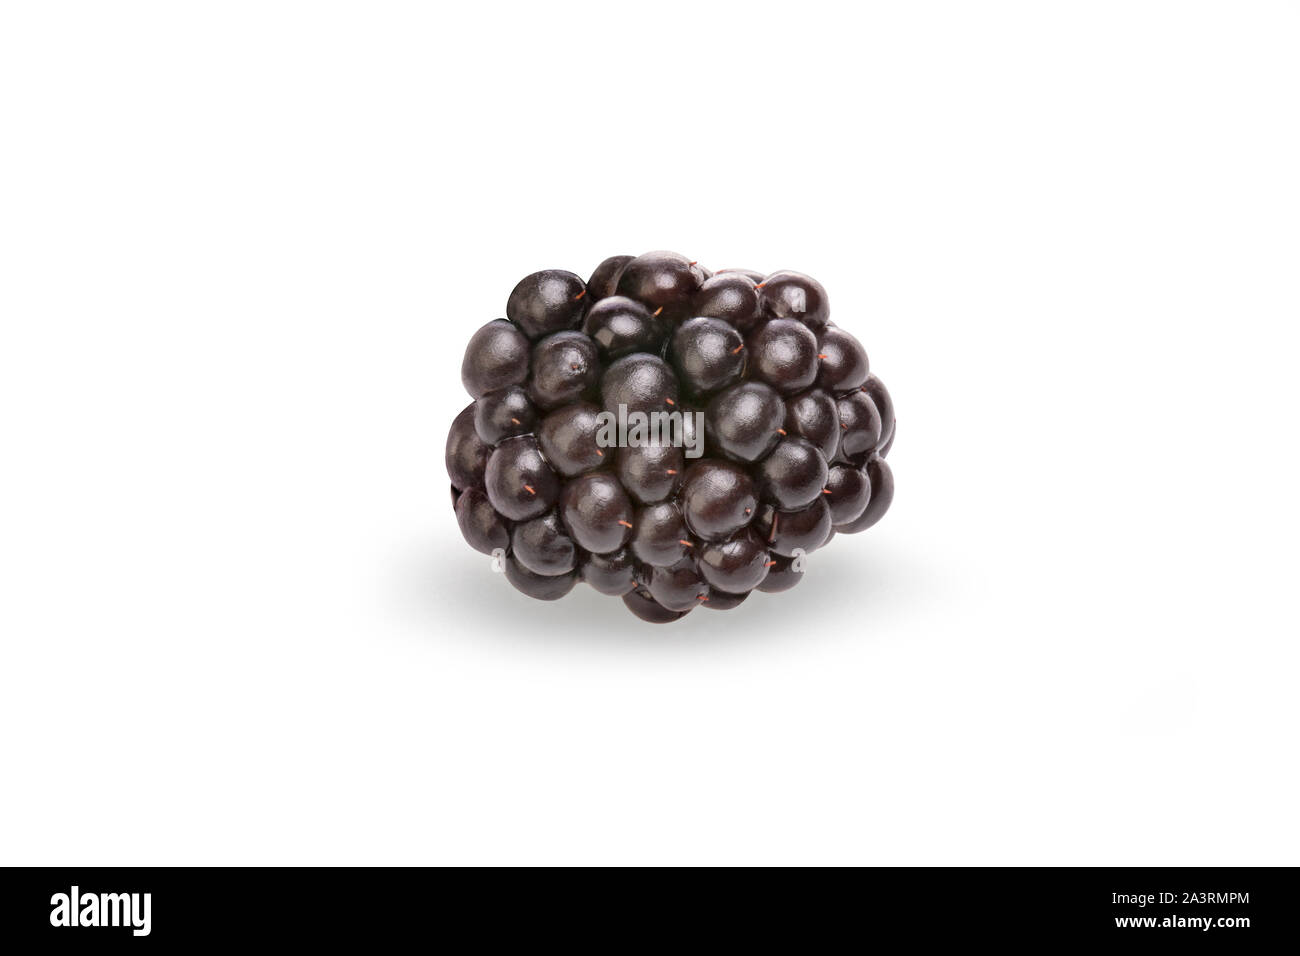 Das BlackBerry-Gerät ist eine weit verbreitete und bekannte Strauch. Ein dornbusch Obst (Gattung Rubus, Familie der Rosaceae) bis 3 m (10 ft) und einem weichen Körper Stockfoto